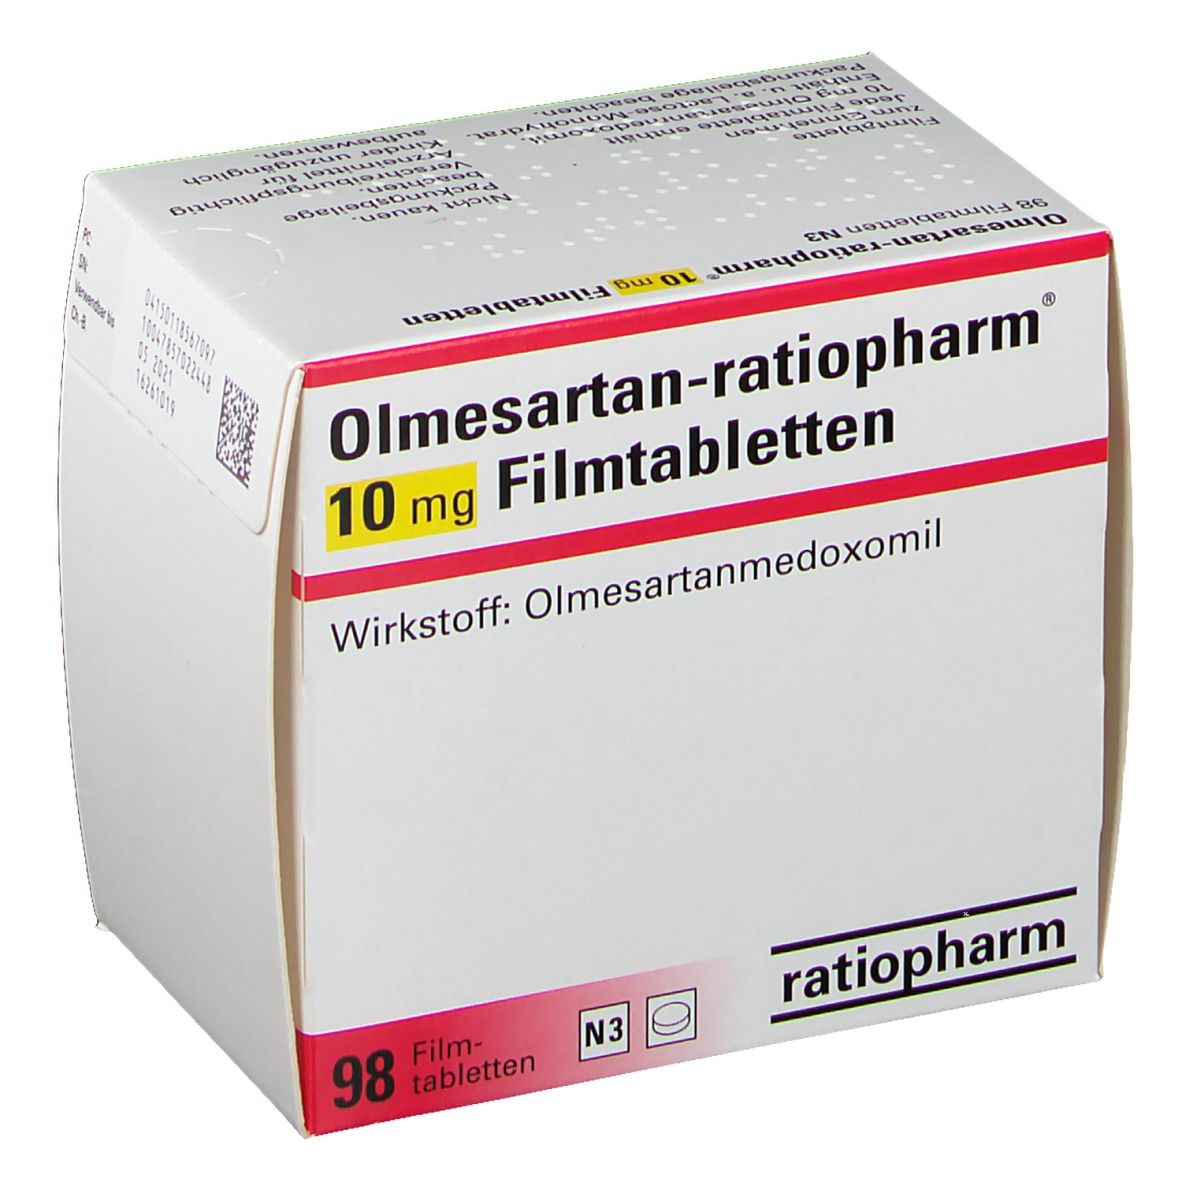 Olmesartan-ratiopharm® 10 mg